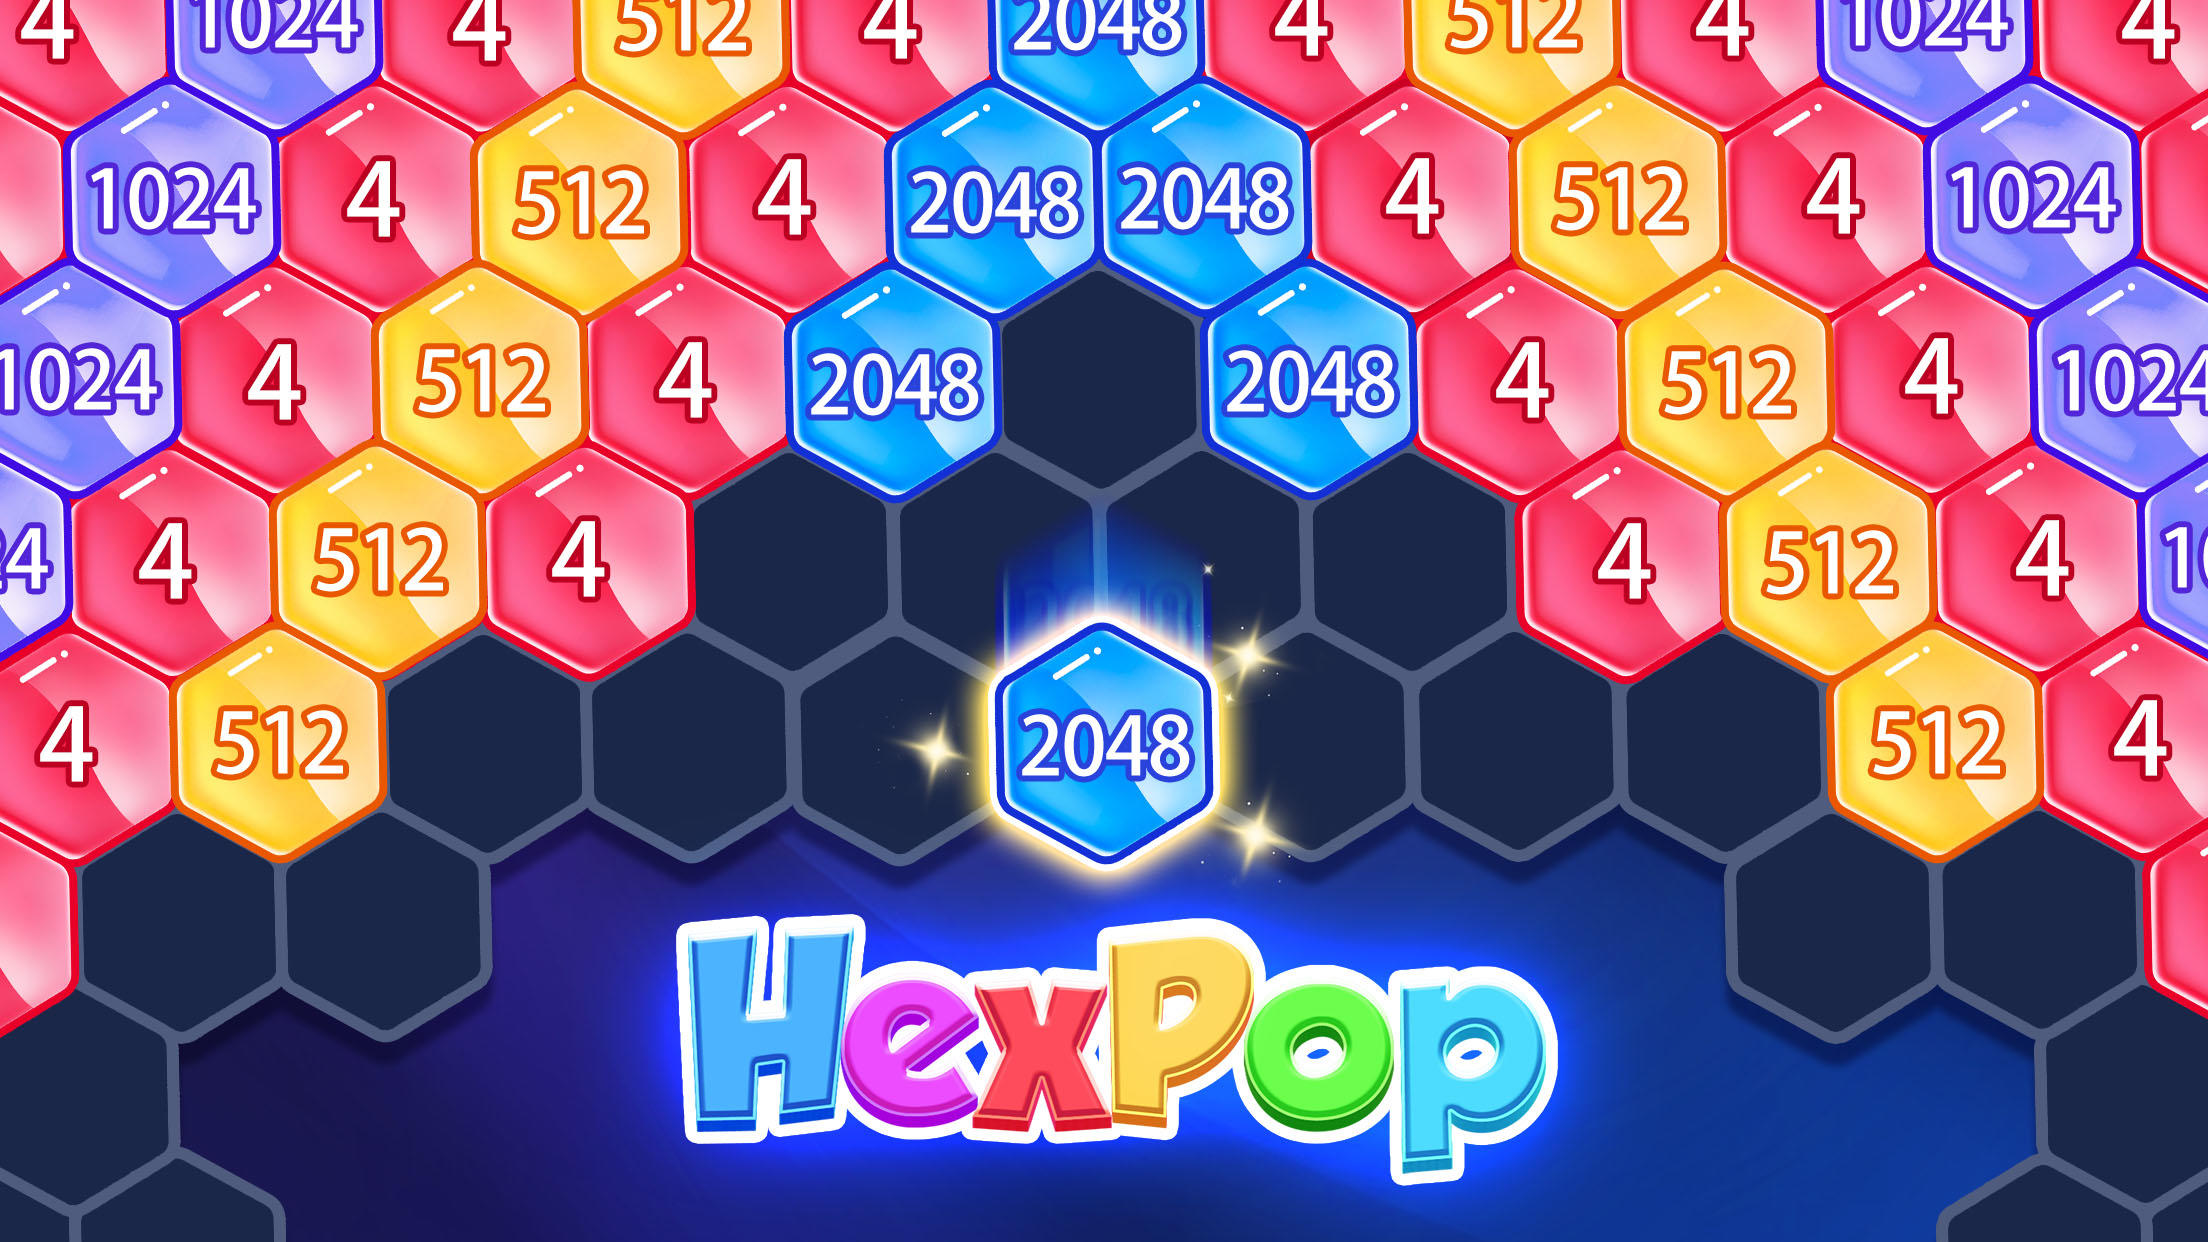 Screenshot 1 of HexPop - Letupan Blok 1010 2.741